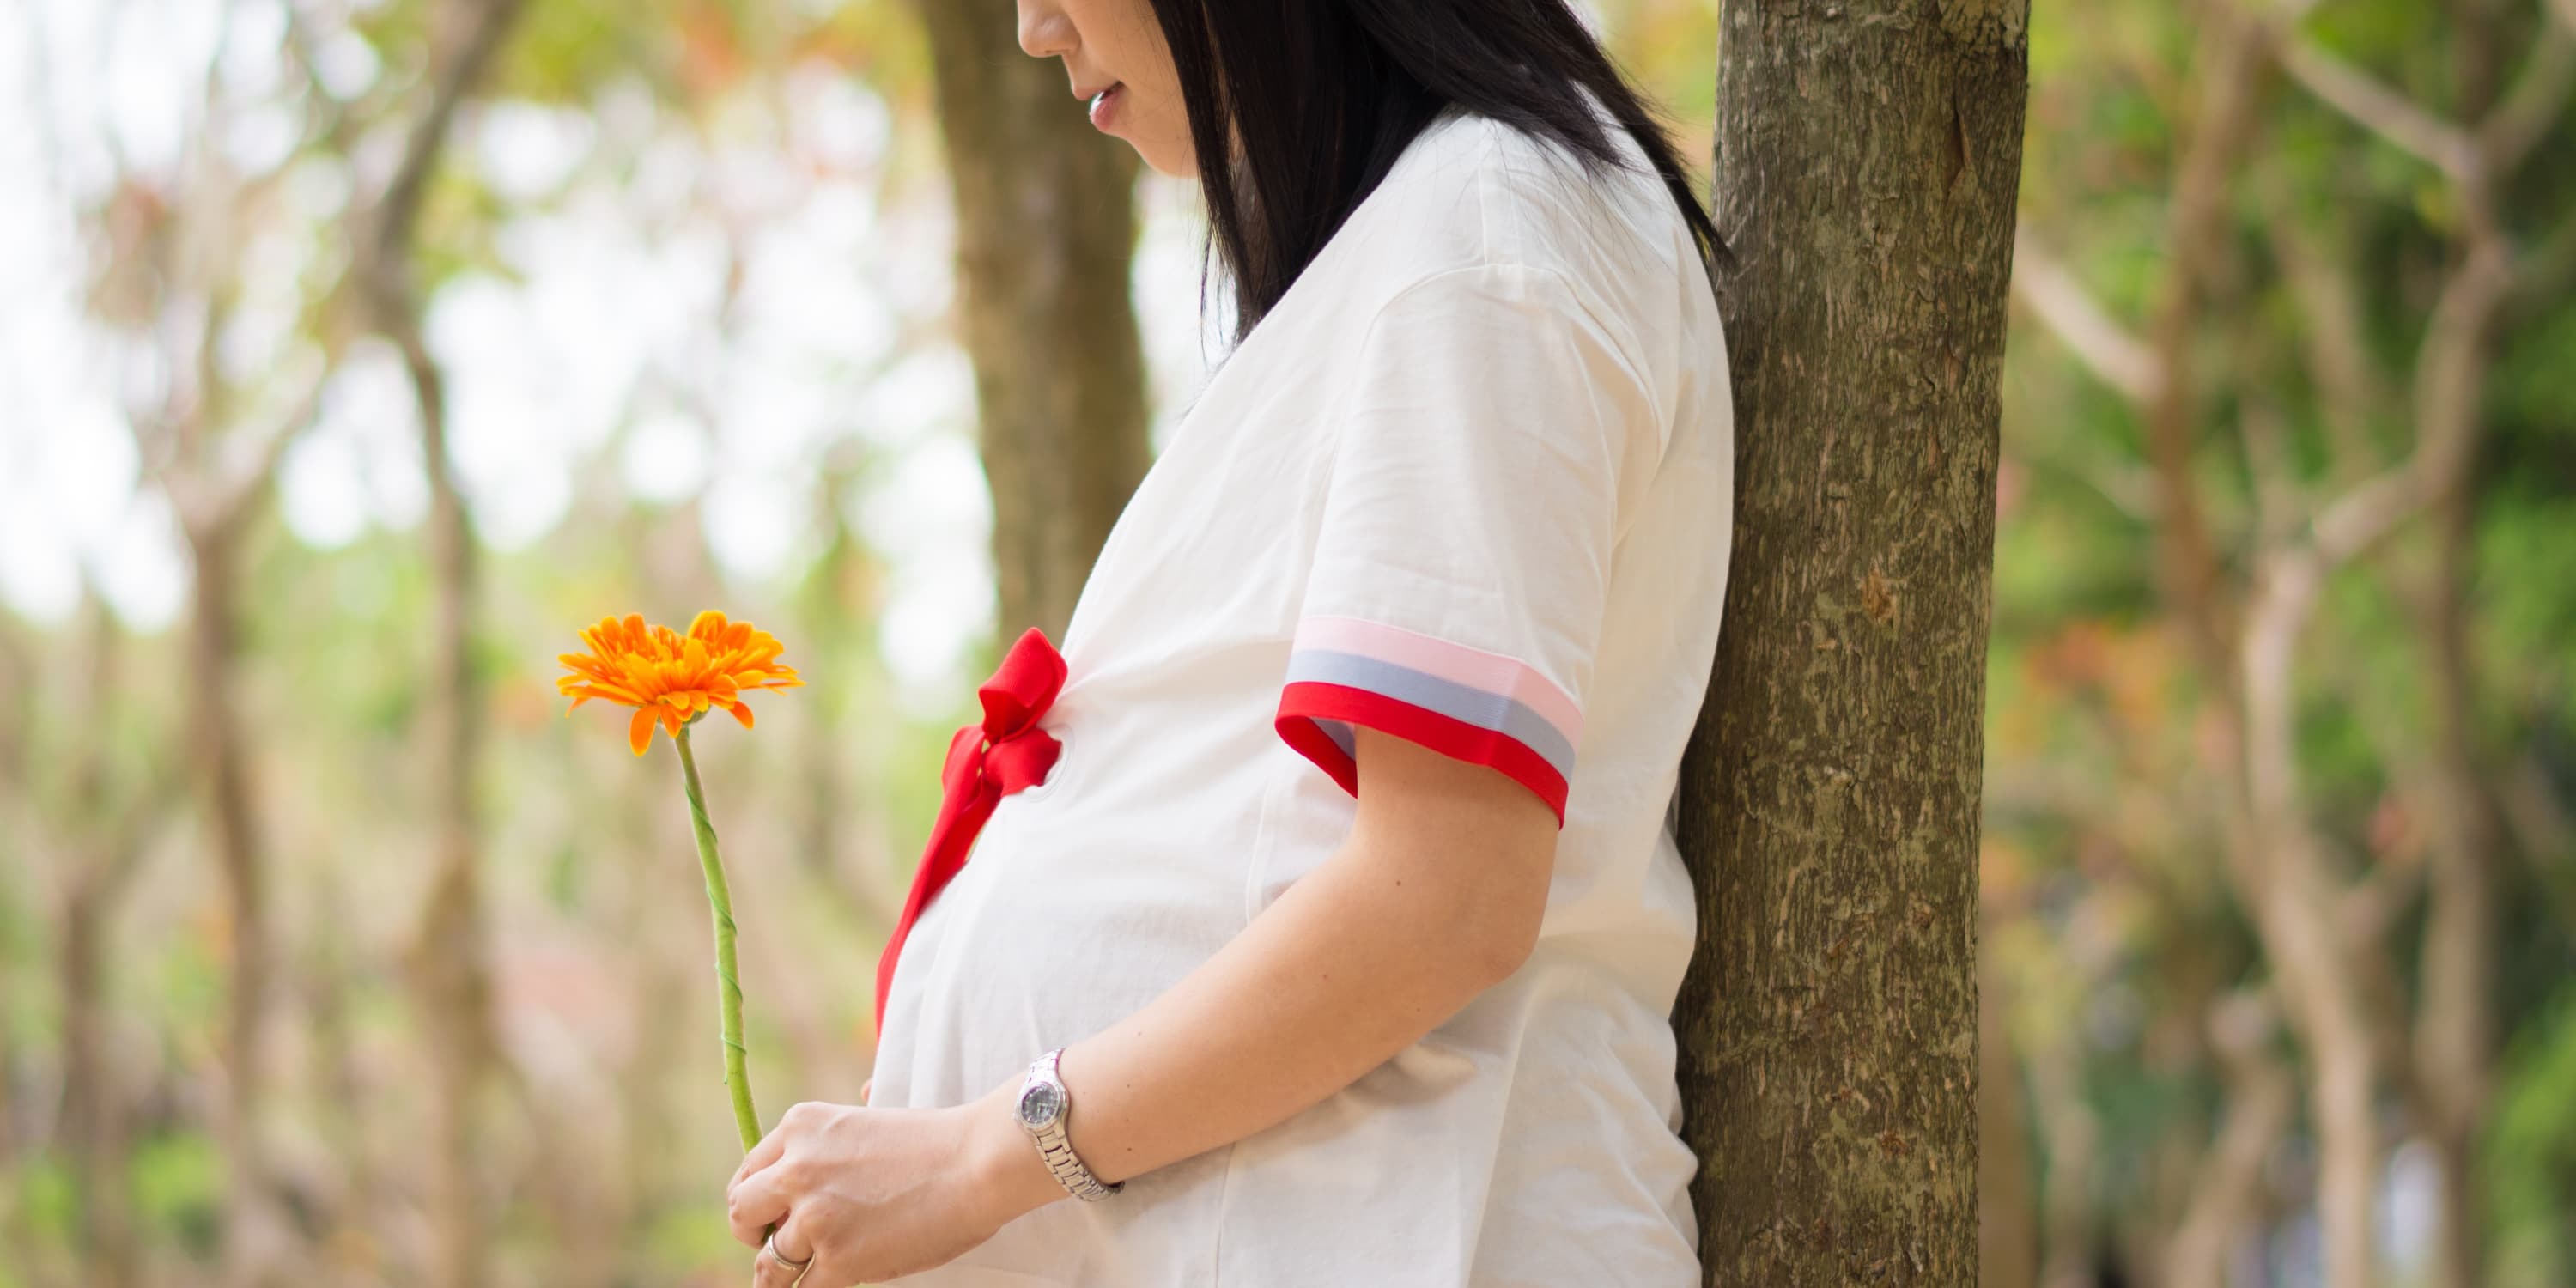 Vista lateral: mujer embarazada está de pie debajo de un árbol y con una flor en las manos.